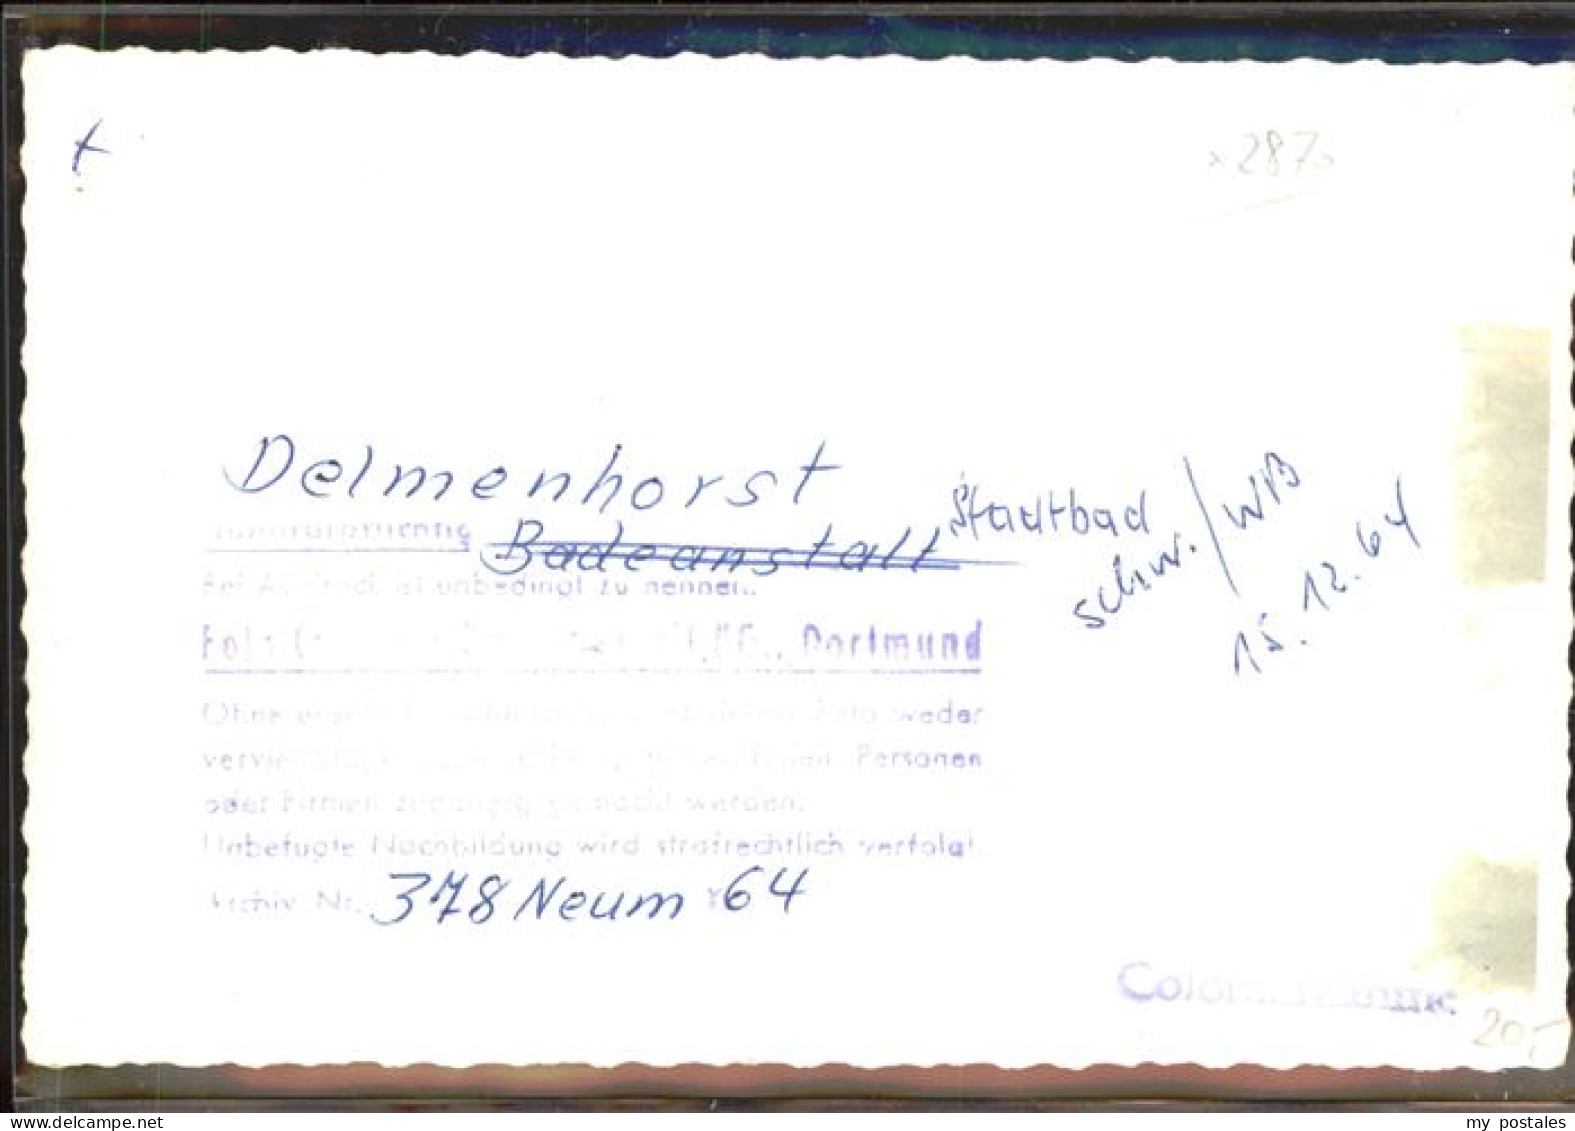 41390903 Delmenhorst Stadtbad Delmenhorst - Delmenhorst